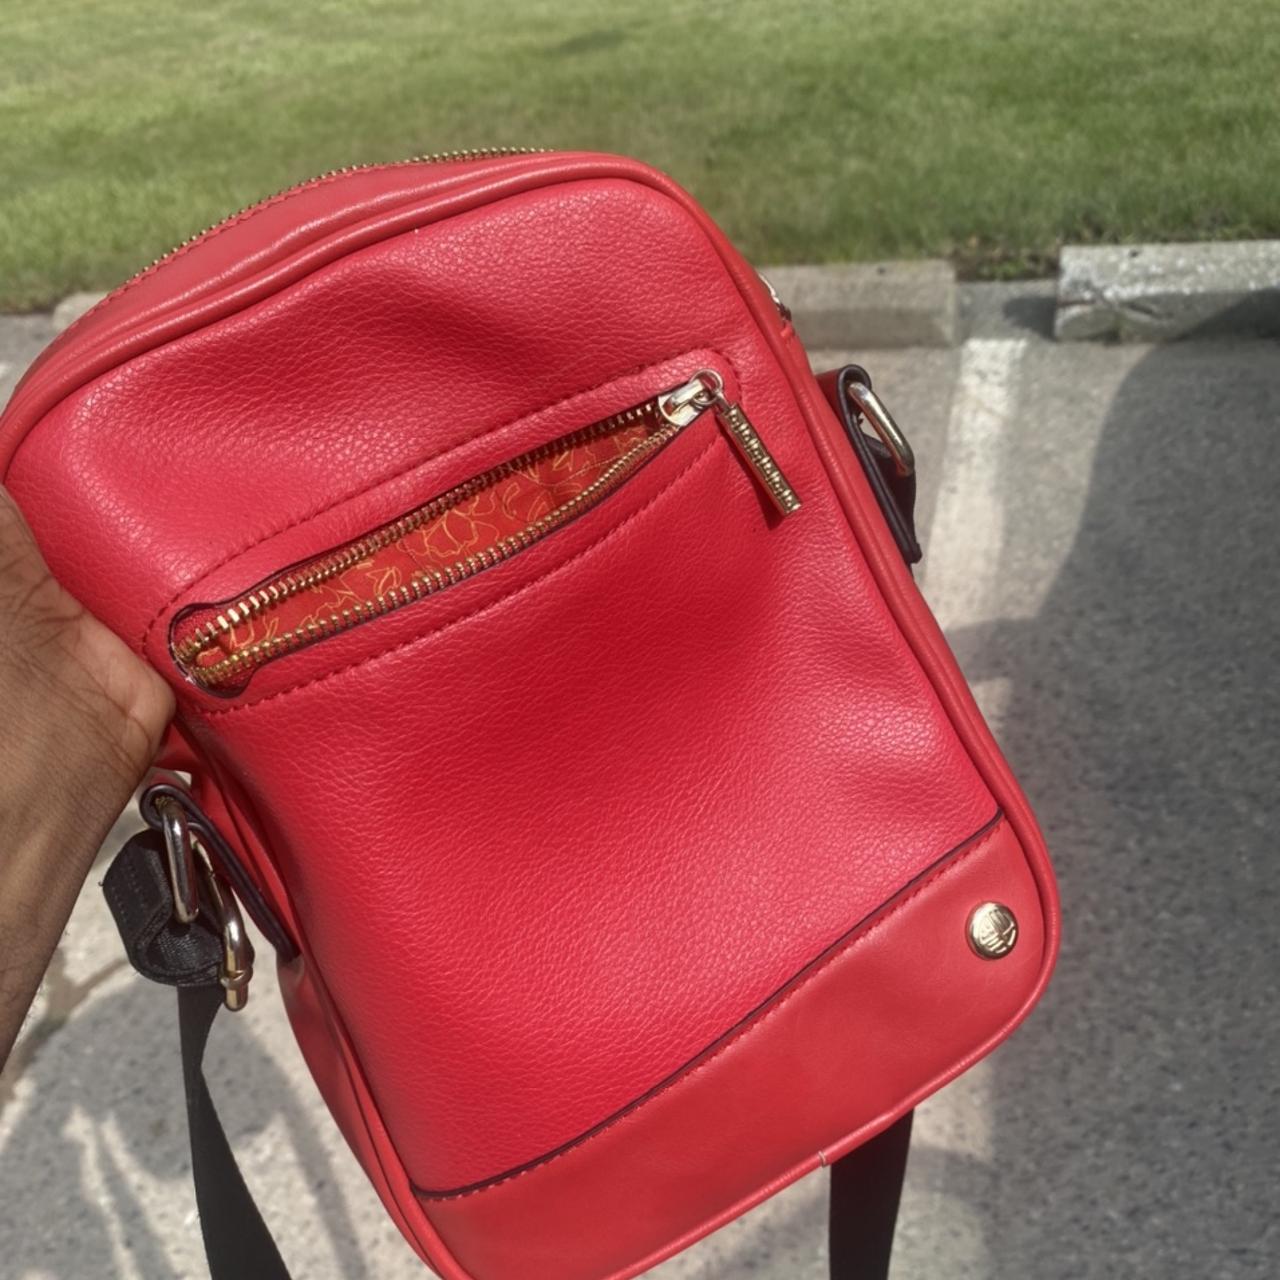 ALDO GLILITLAN - Handbag - merlot/dark red - Zalando.de